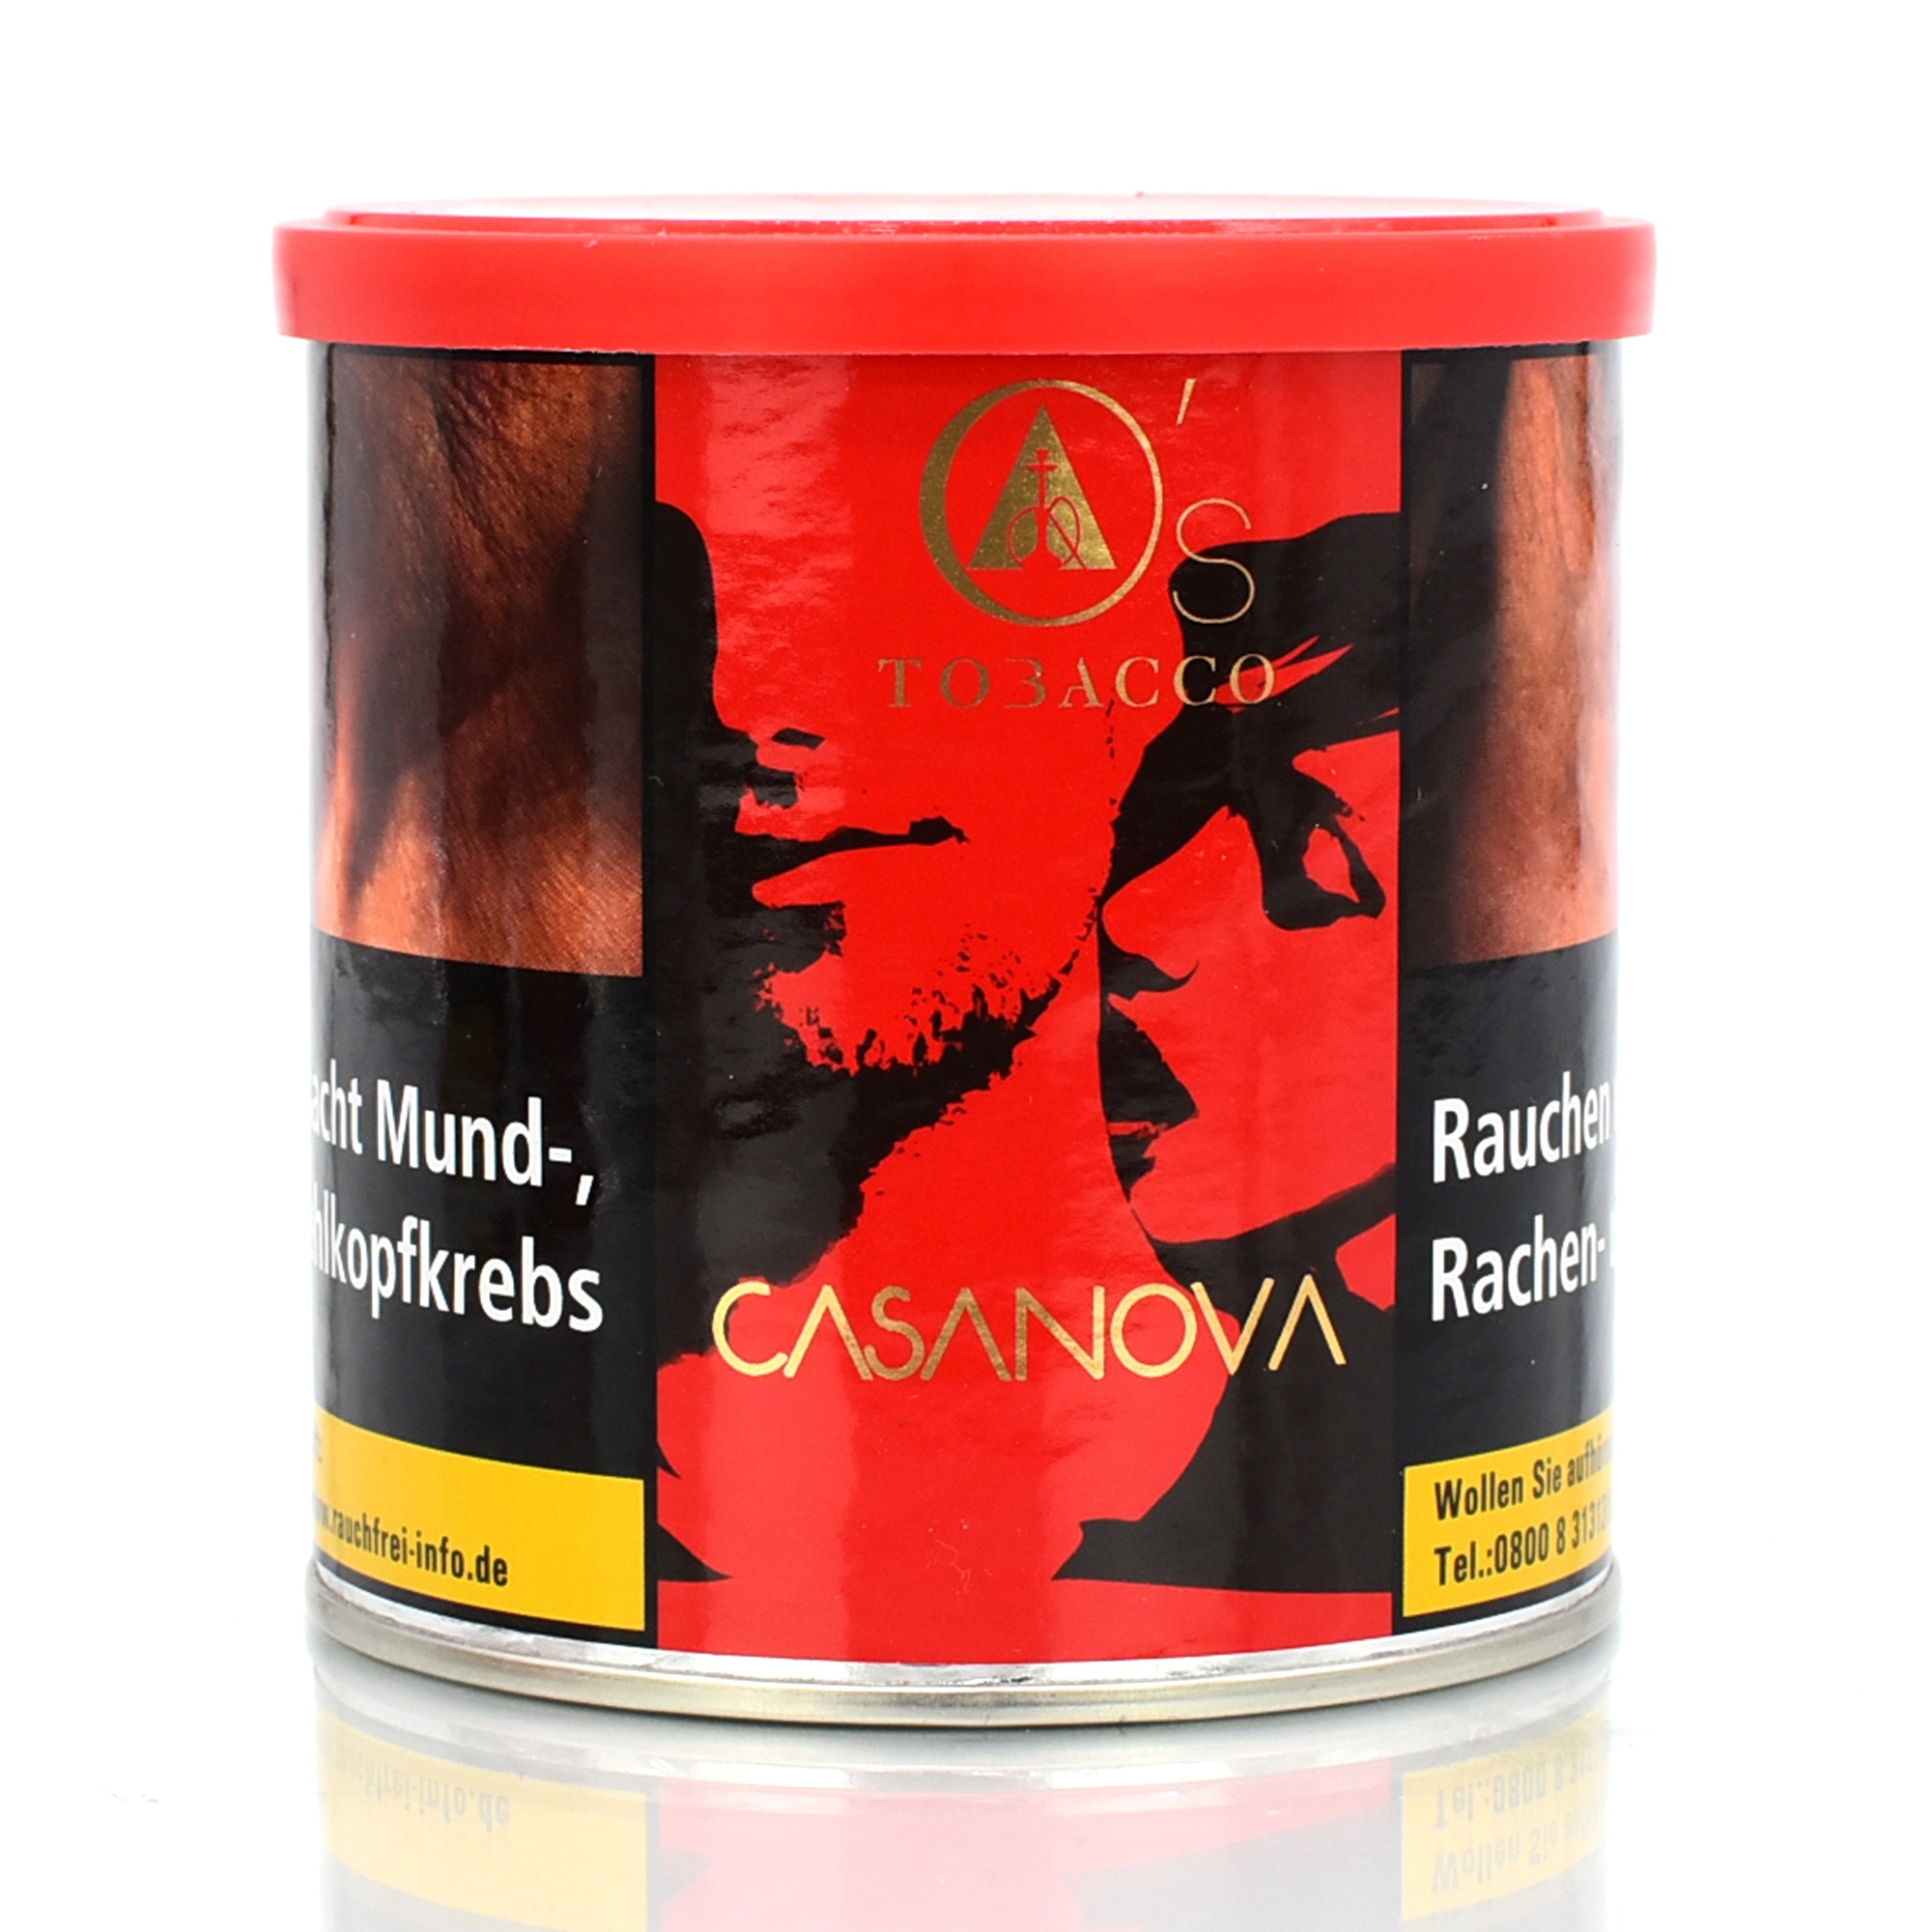 Os-tabak-CasanovaZEnBj78PaP2Rj